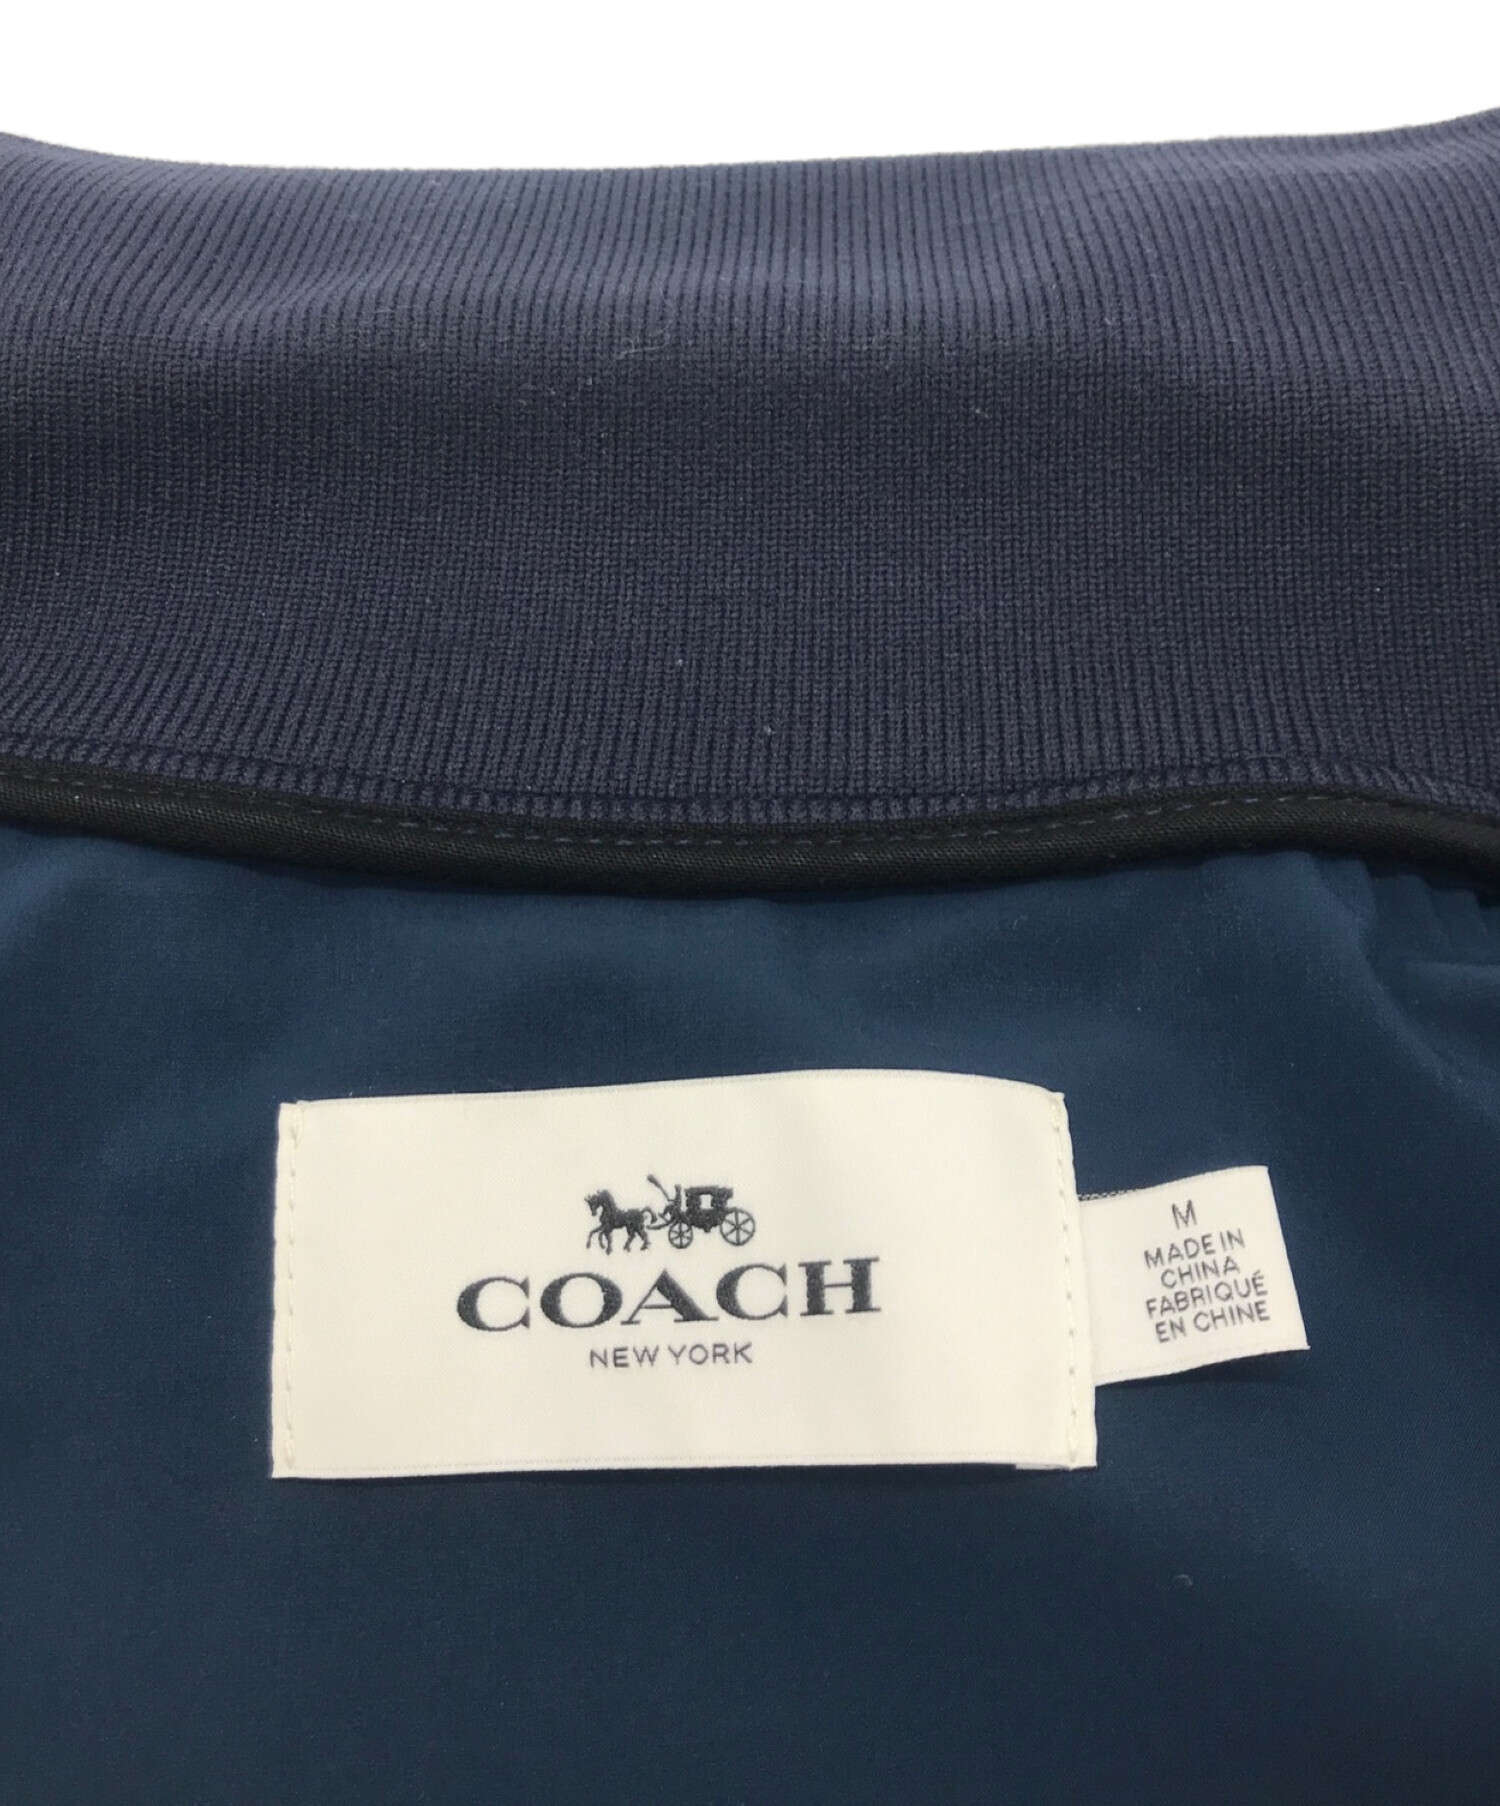 COACH (コーチ) サイドロゴライン ジップアップ ボンバージャケット ネイビー サイズ:M